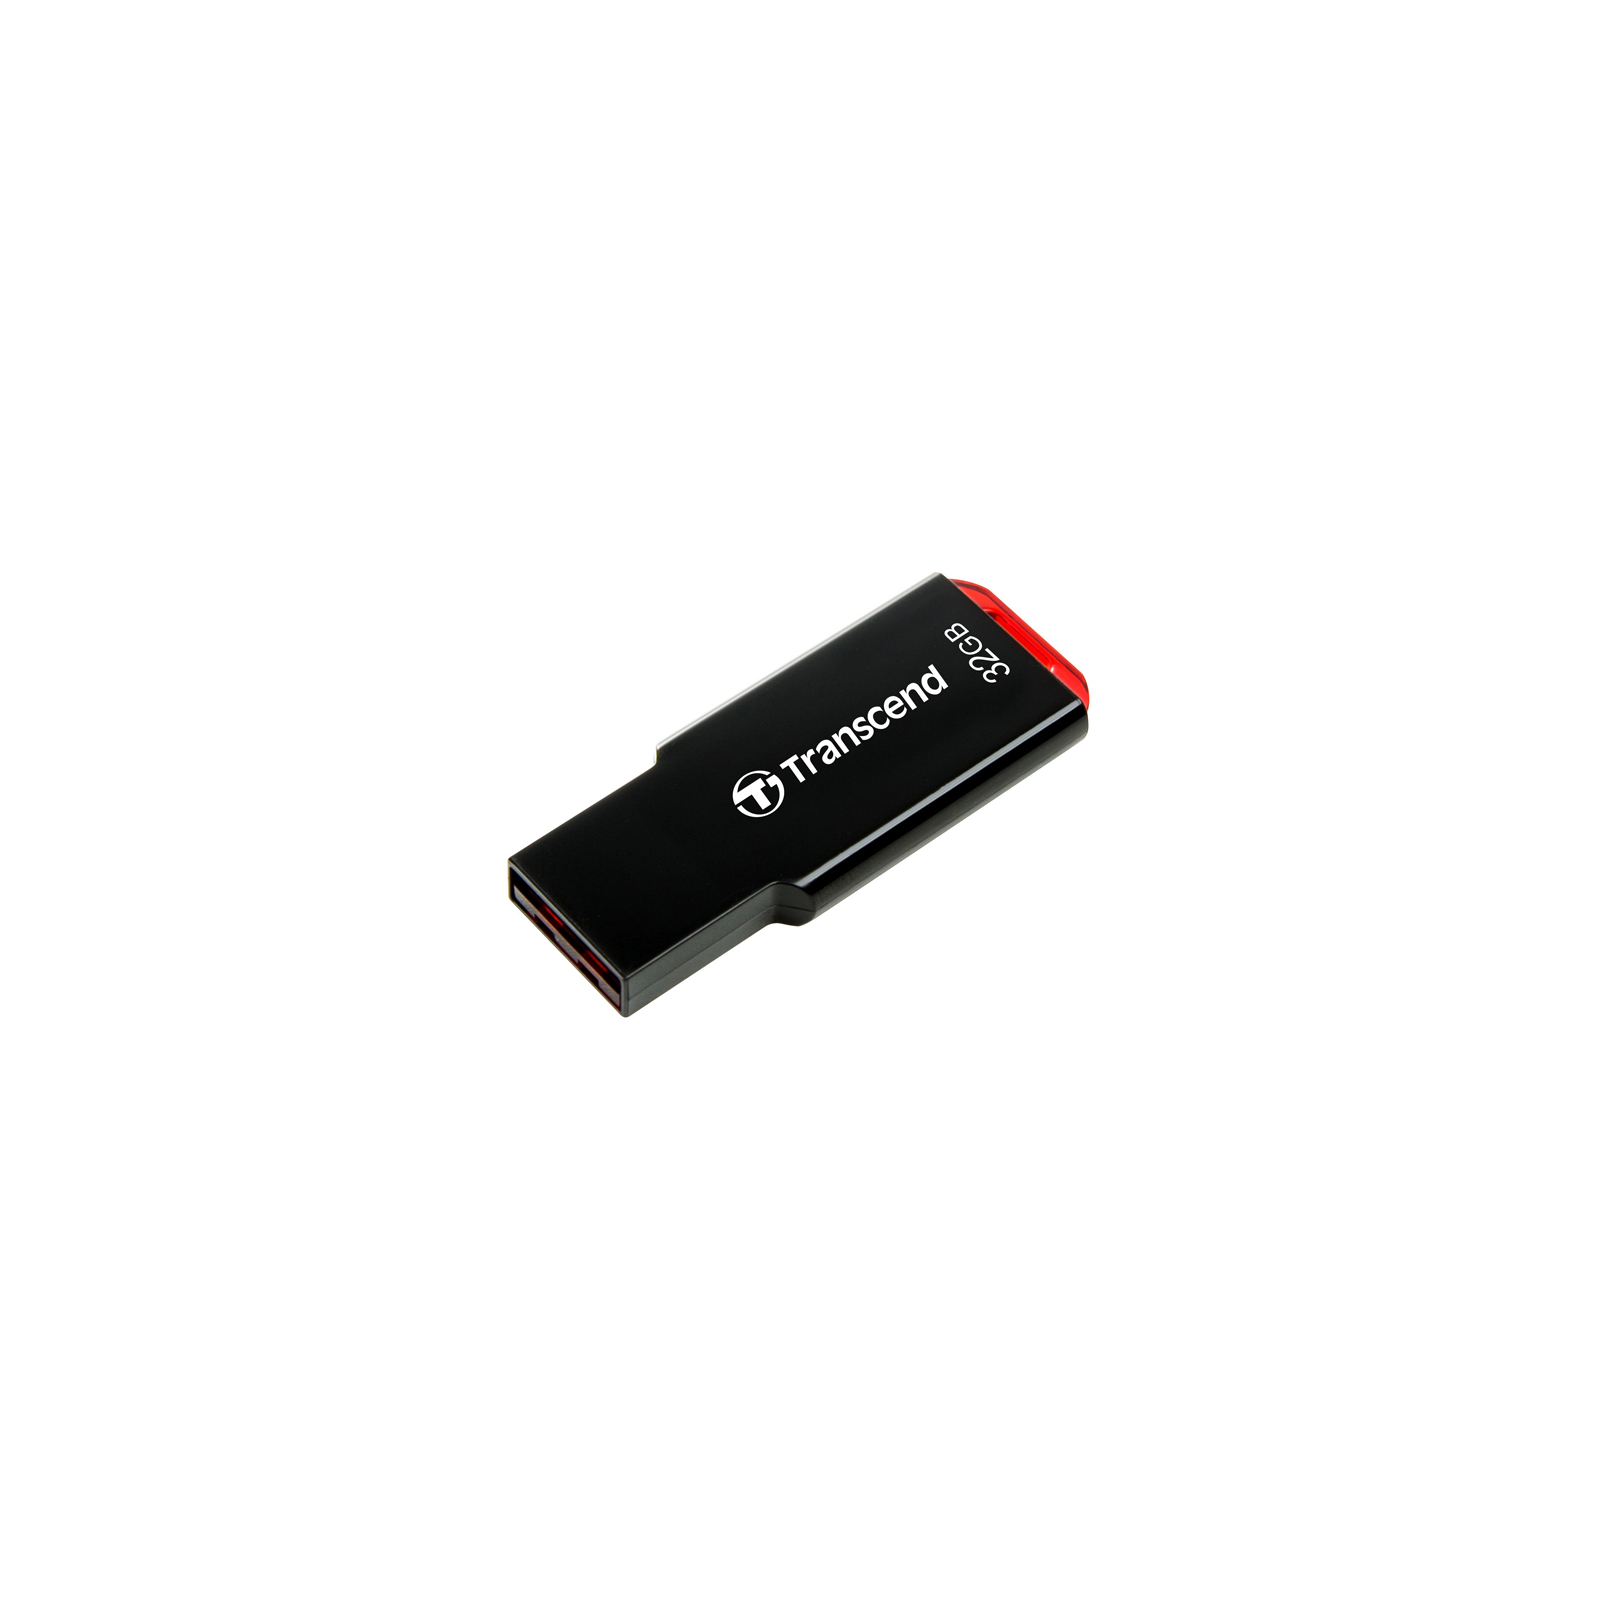 USB флеш накопичувач Transcend 32GB JetFlash 310 Black USB 2.0 (TS32GJF310) зображення 2